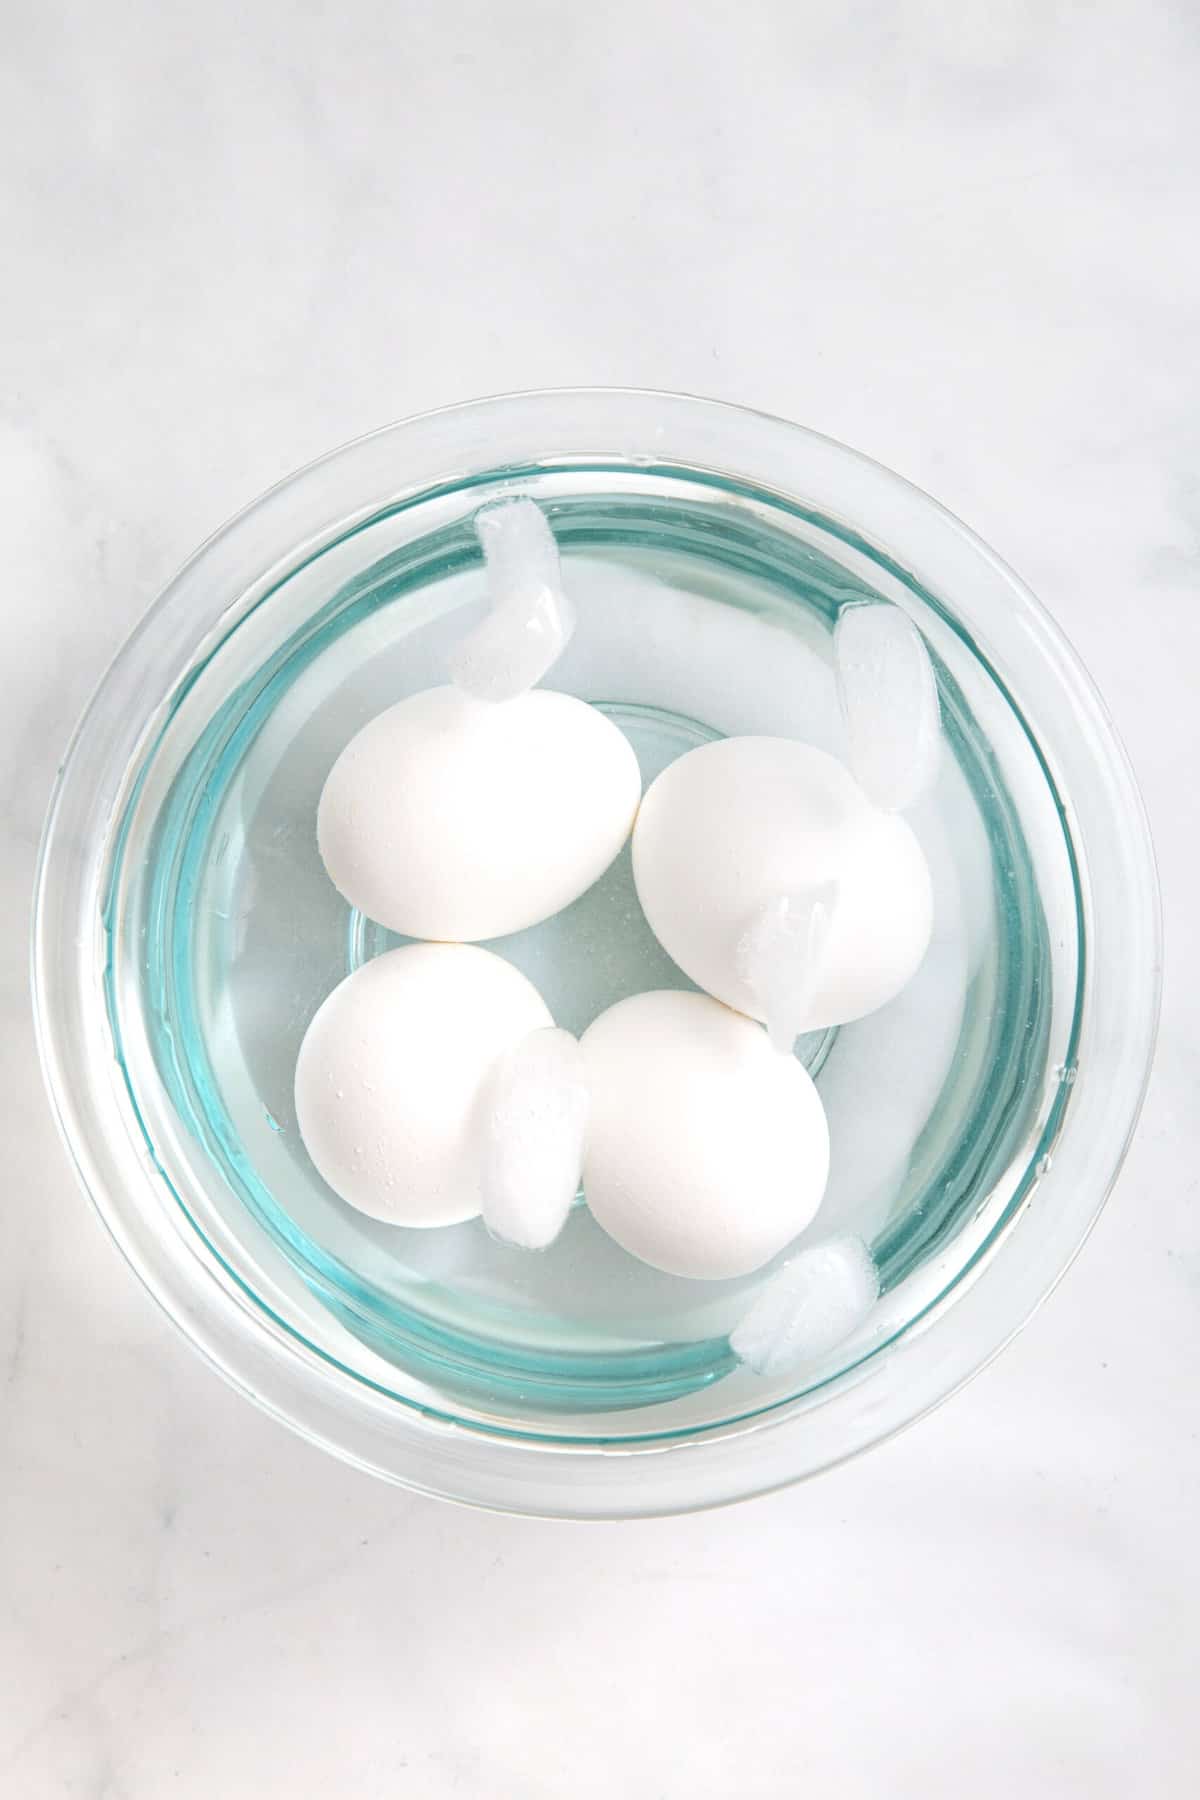 step 2 to make air fryer eggs, put eggs in an ice bath